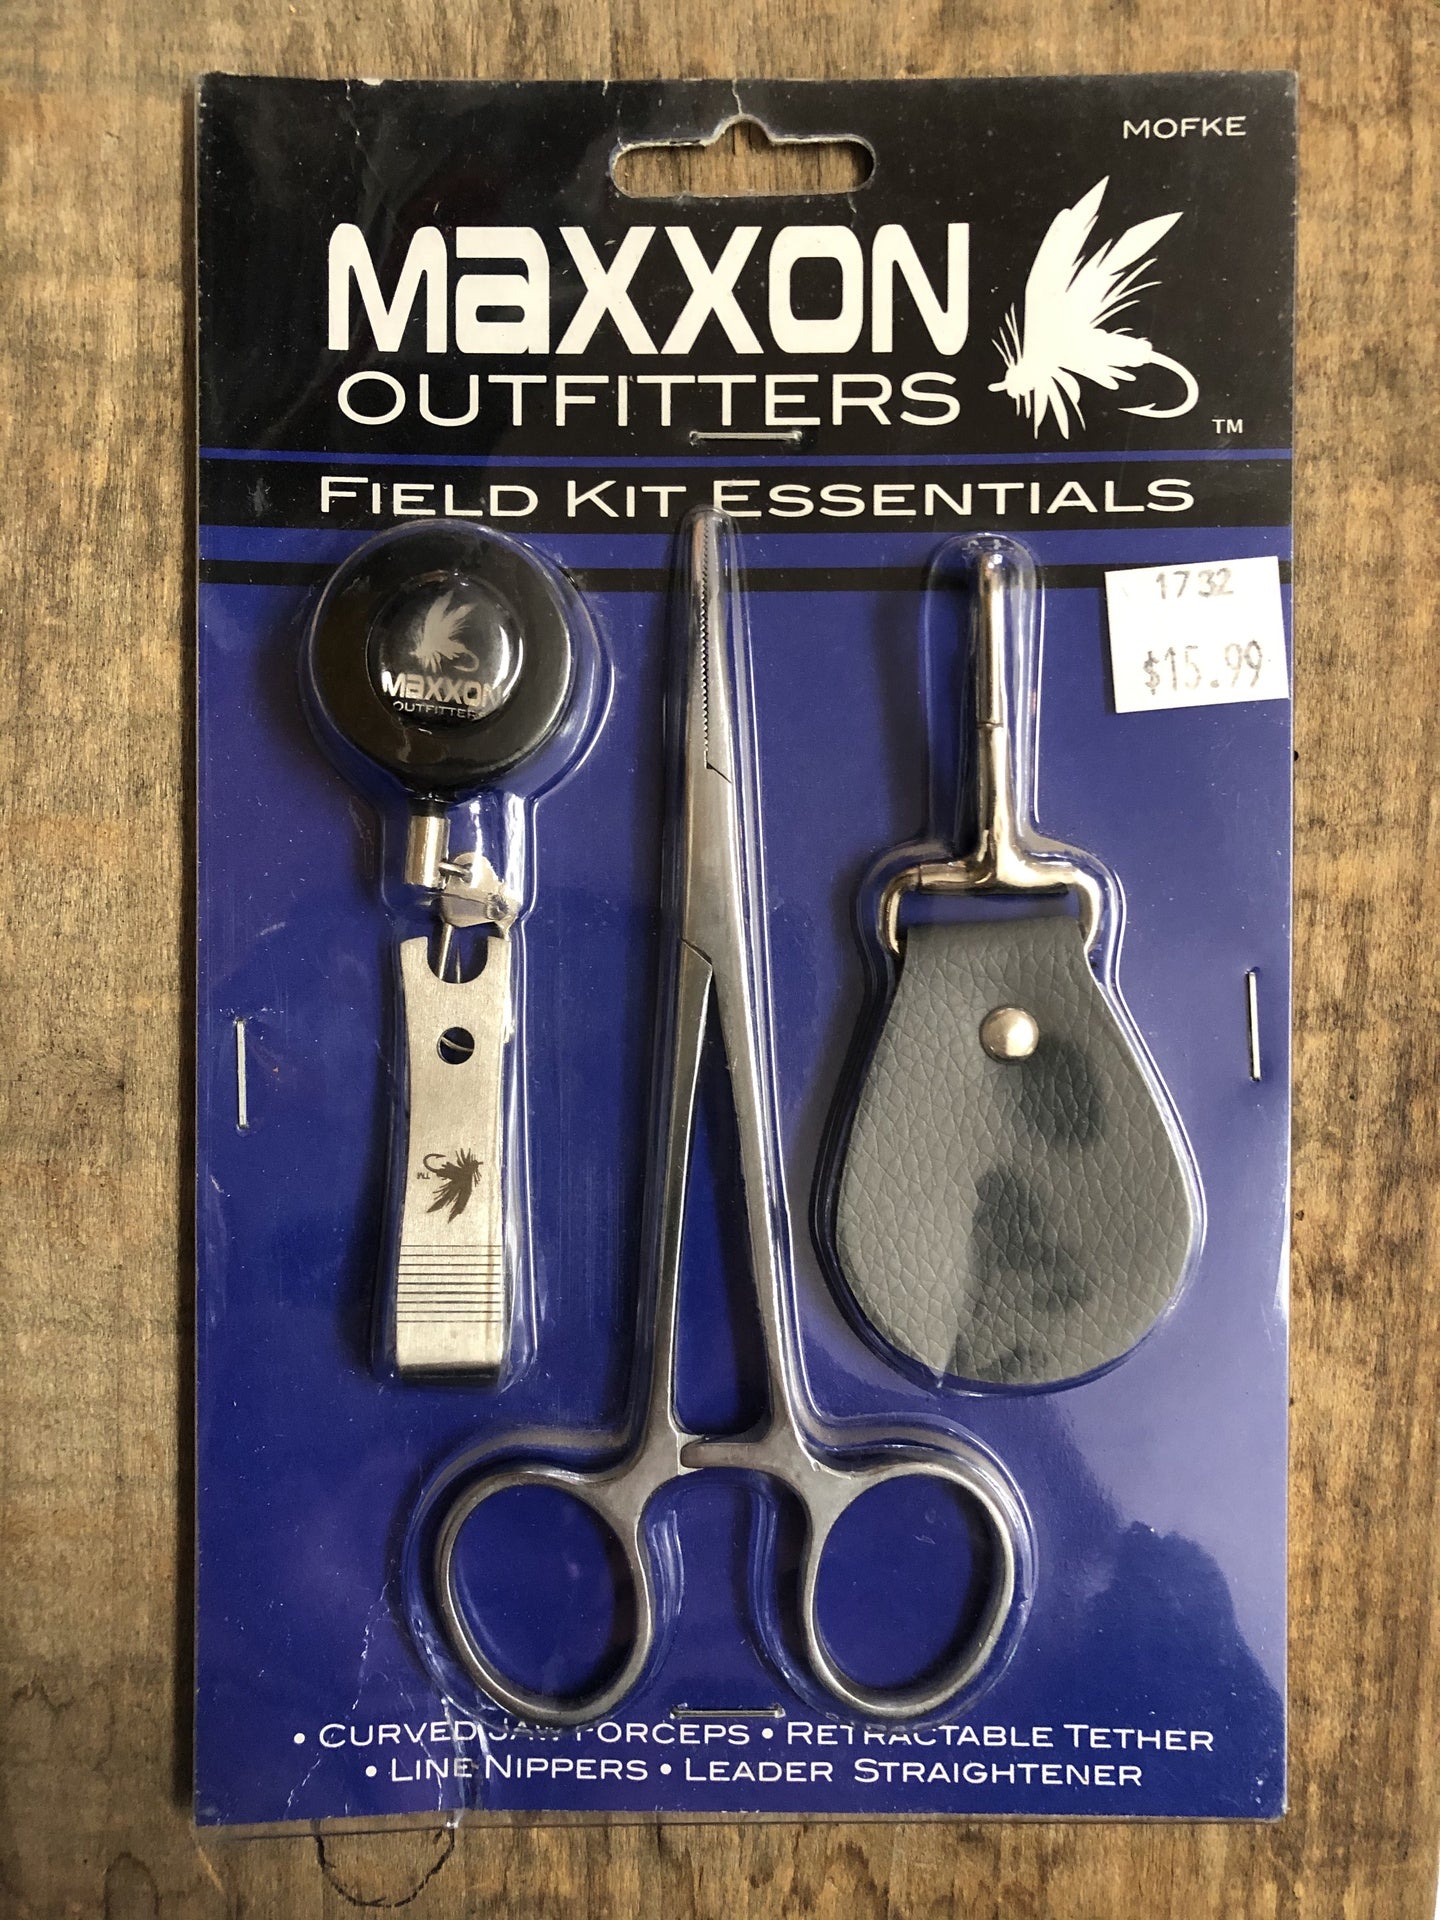 Field Kit Essentials